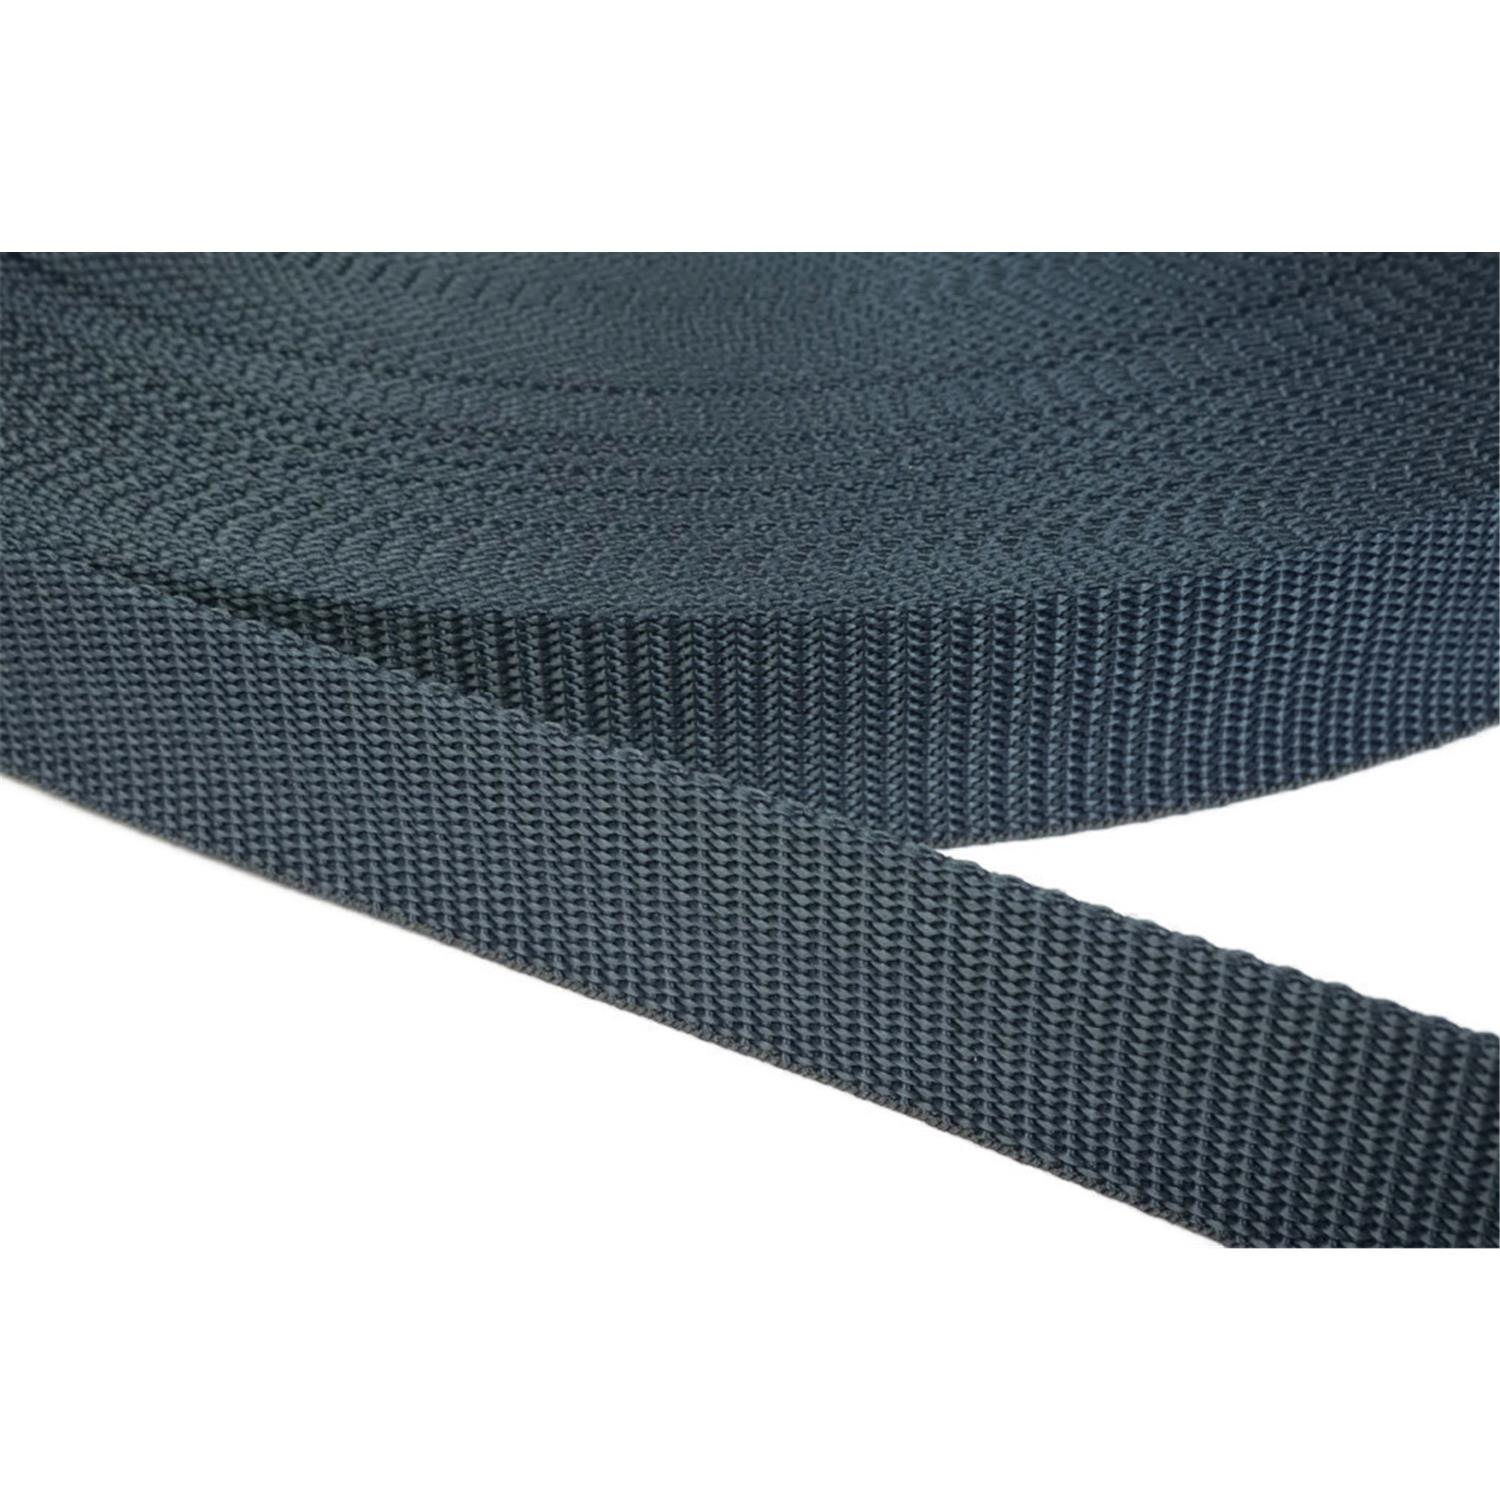 Gurtband 20mm breit aus Polypropylen in 41 Farben 40 - dunkelgrau/blau 6 Meter